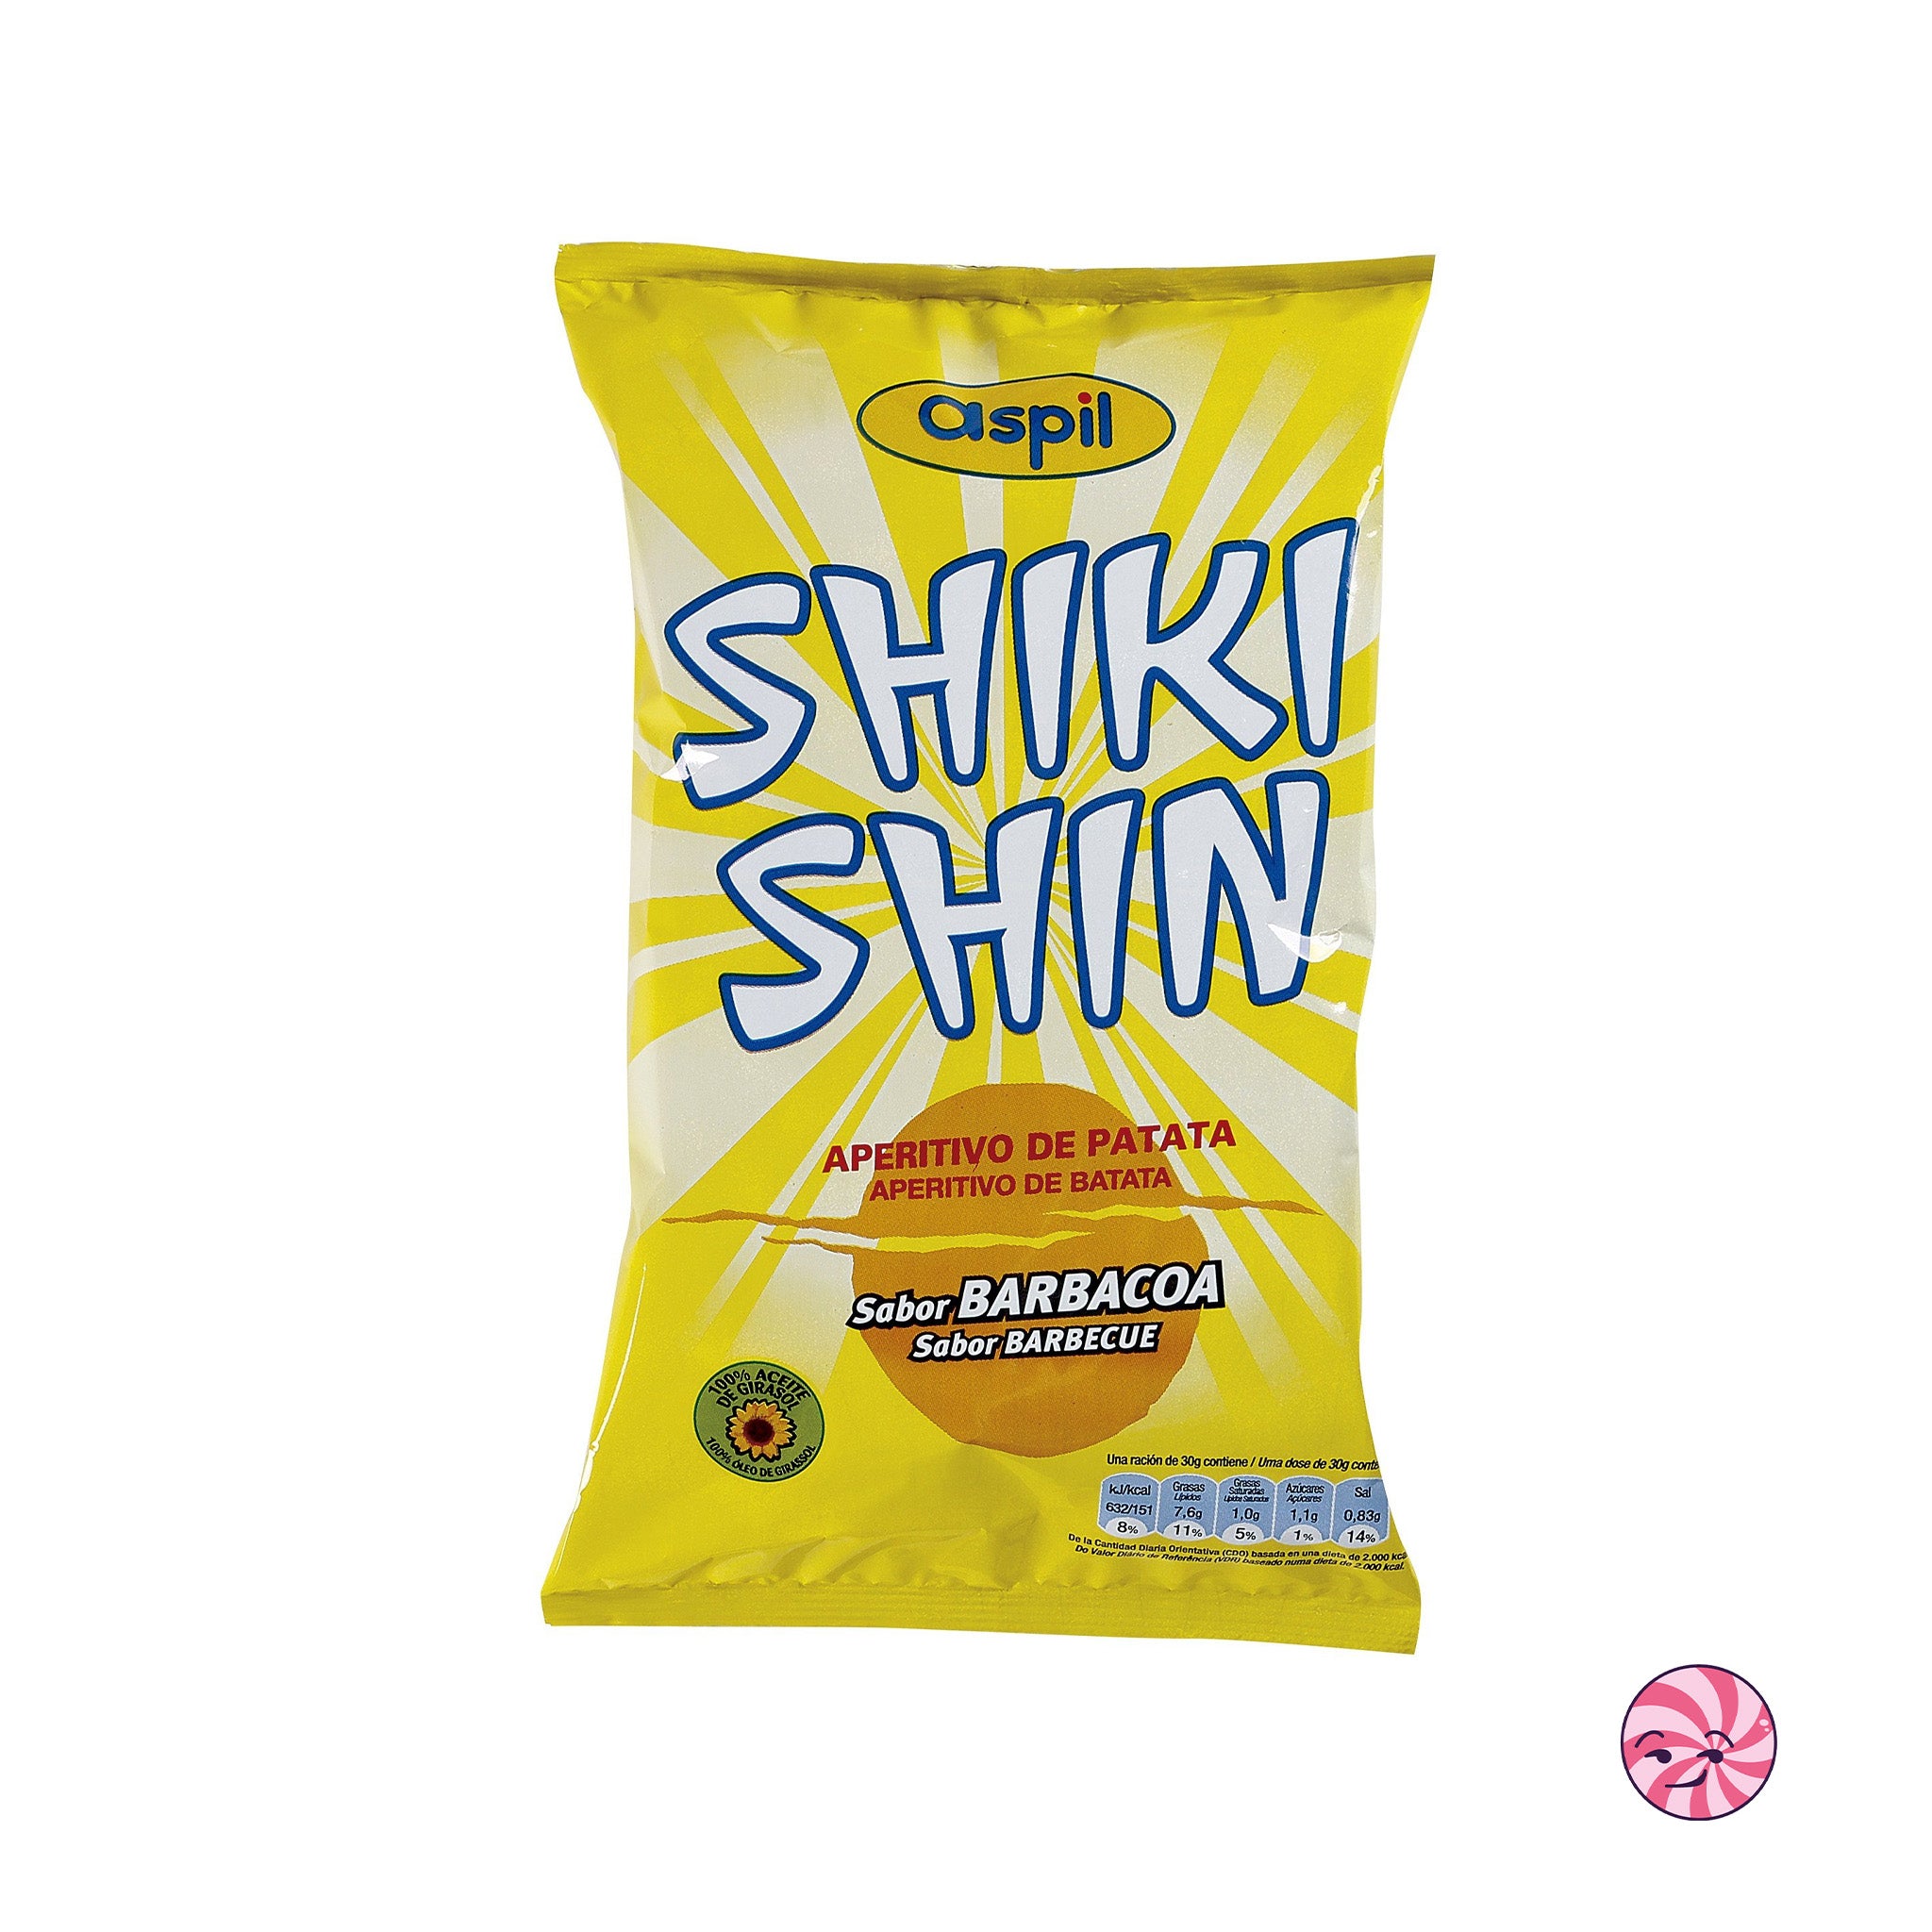 Shiki shin